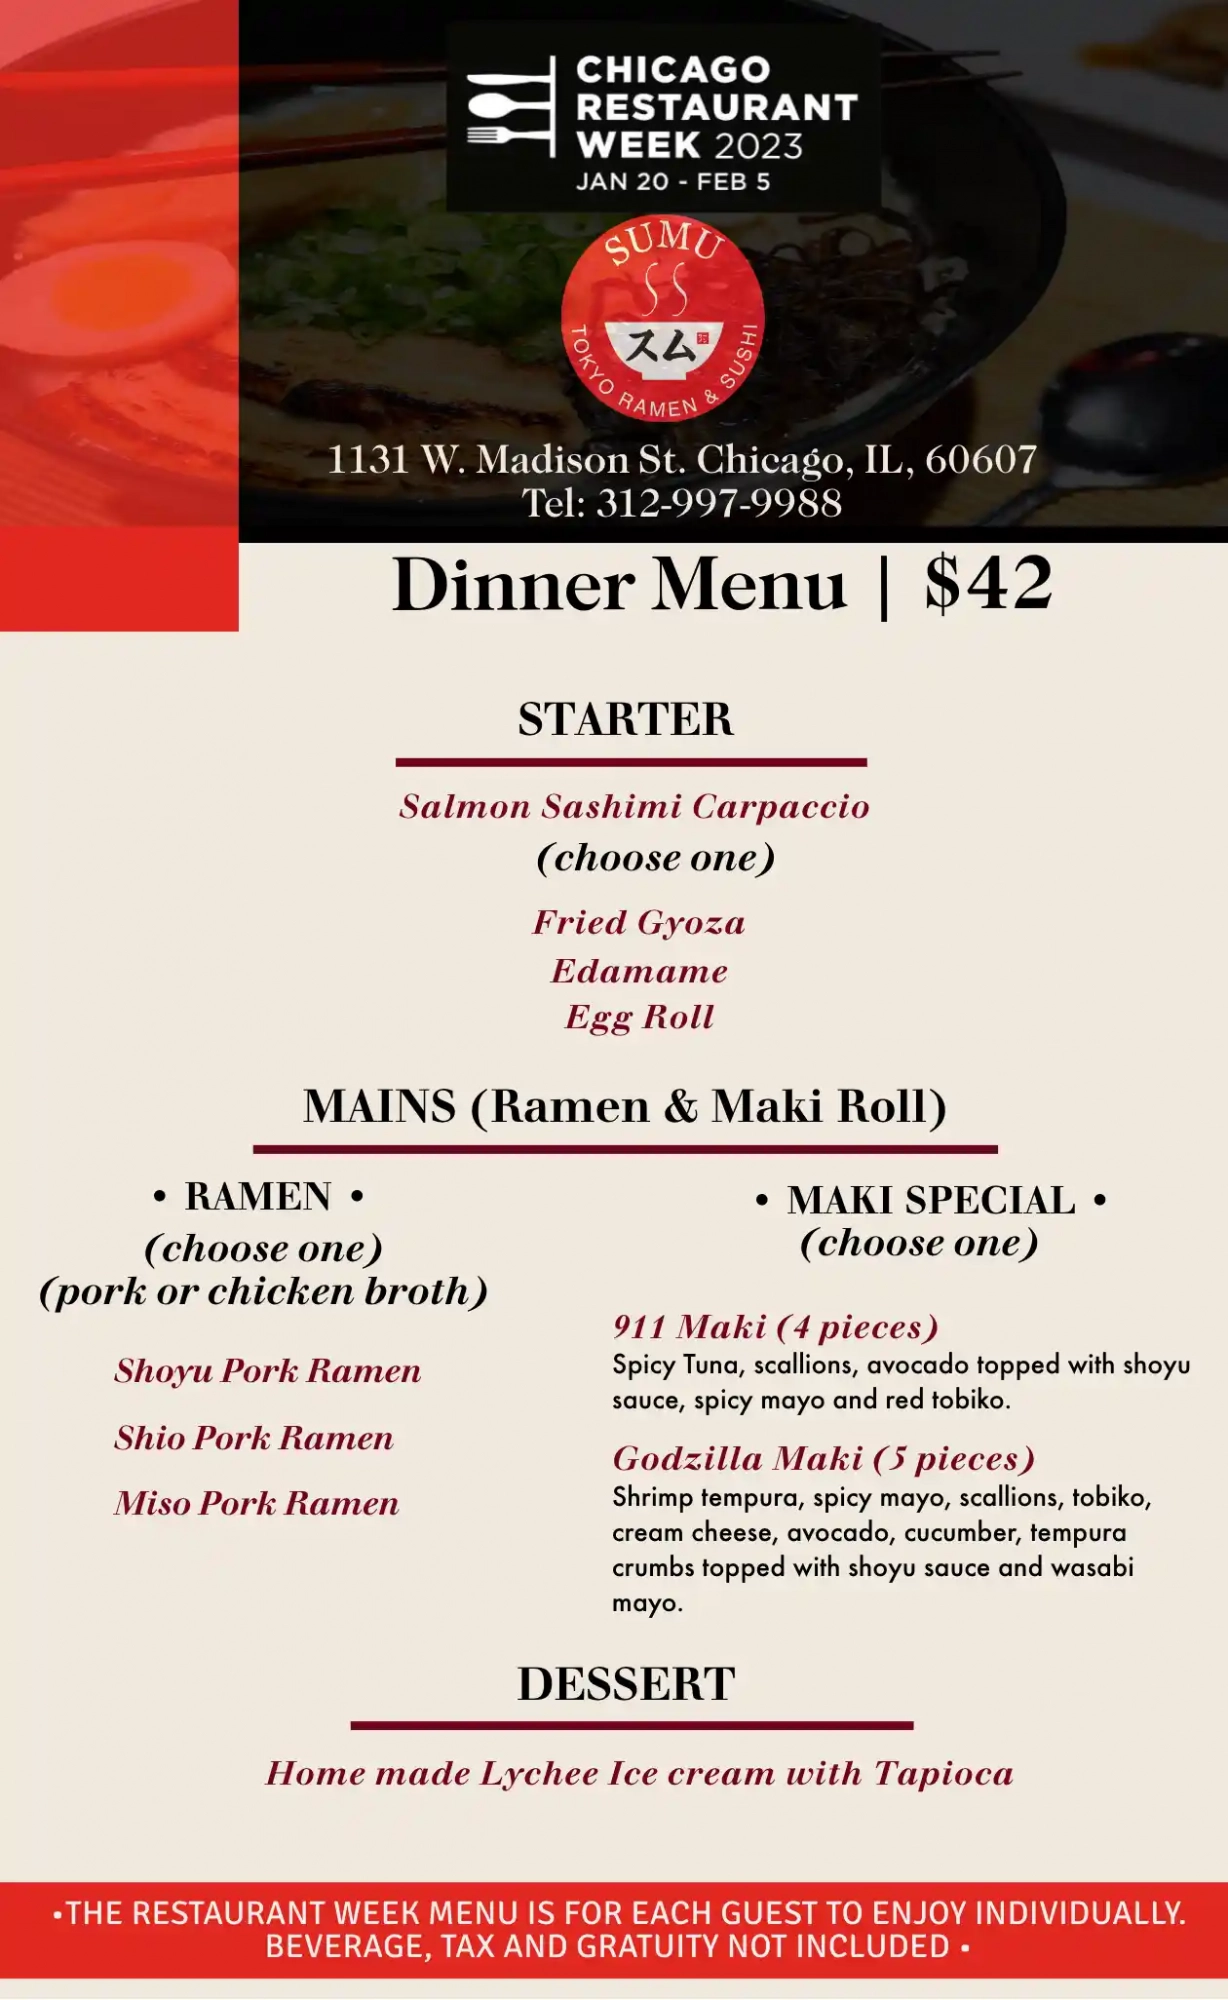 Chicago Restaurant Week 2023 Menu Sumo Tokyo Ramen Sushi Dinner